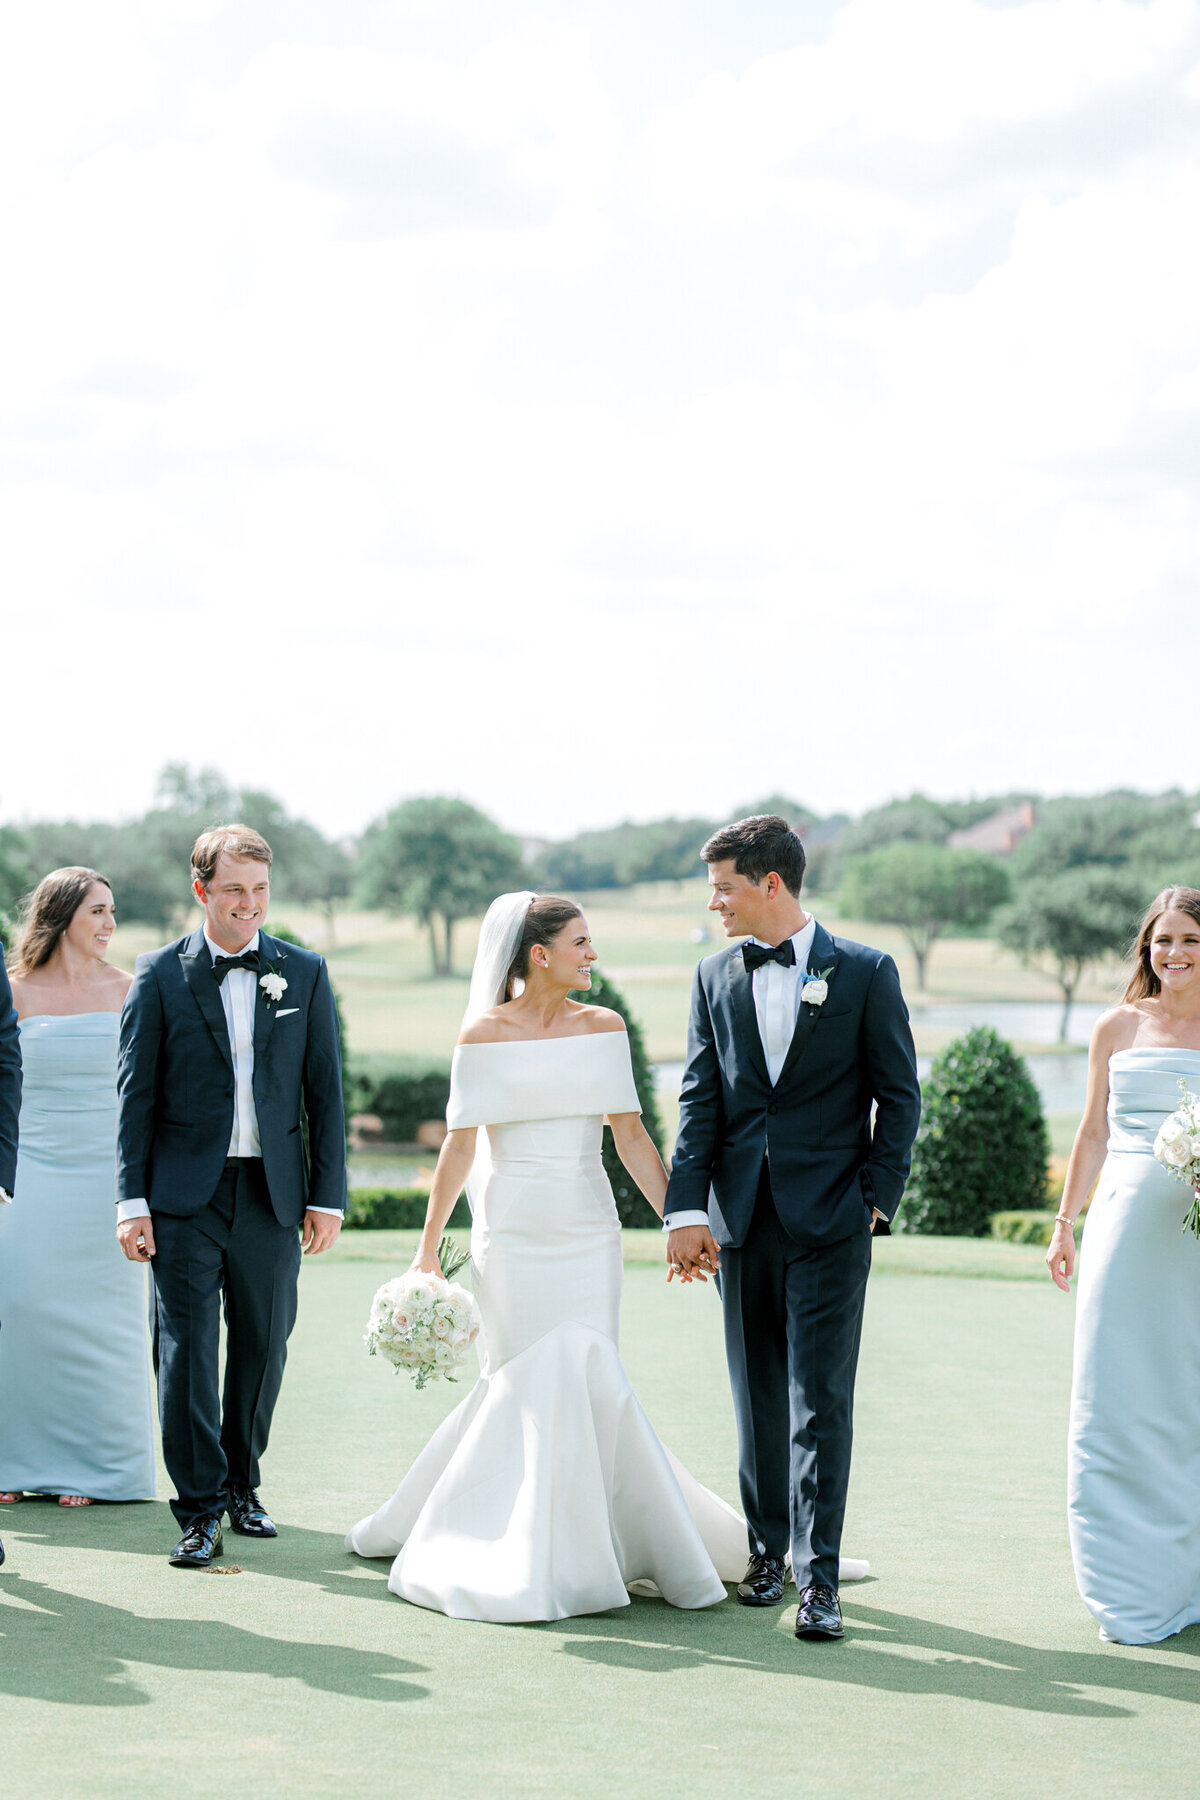 Annie & Logan's Wedding | Dallas Wedding Photographer | Sami Kathryn Photography-159